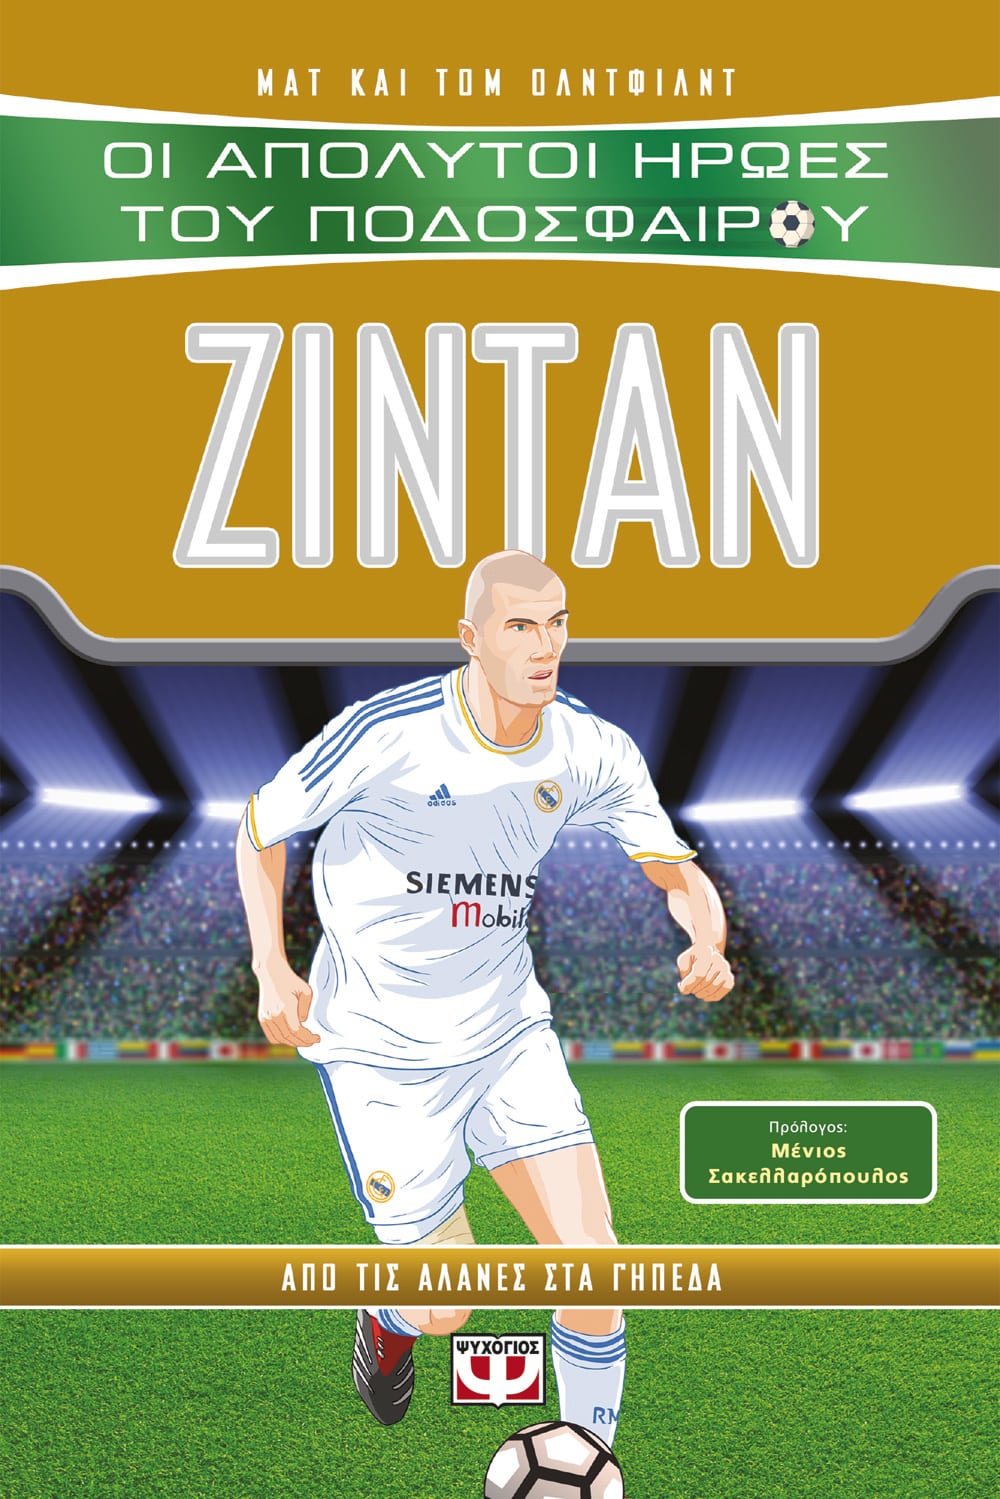 Οι Απόλυτοι Ήρωες του Ποδοσφαίρου: Ζιντάν